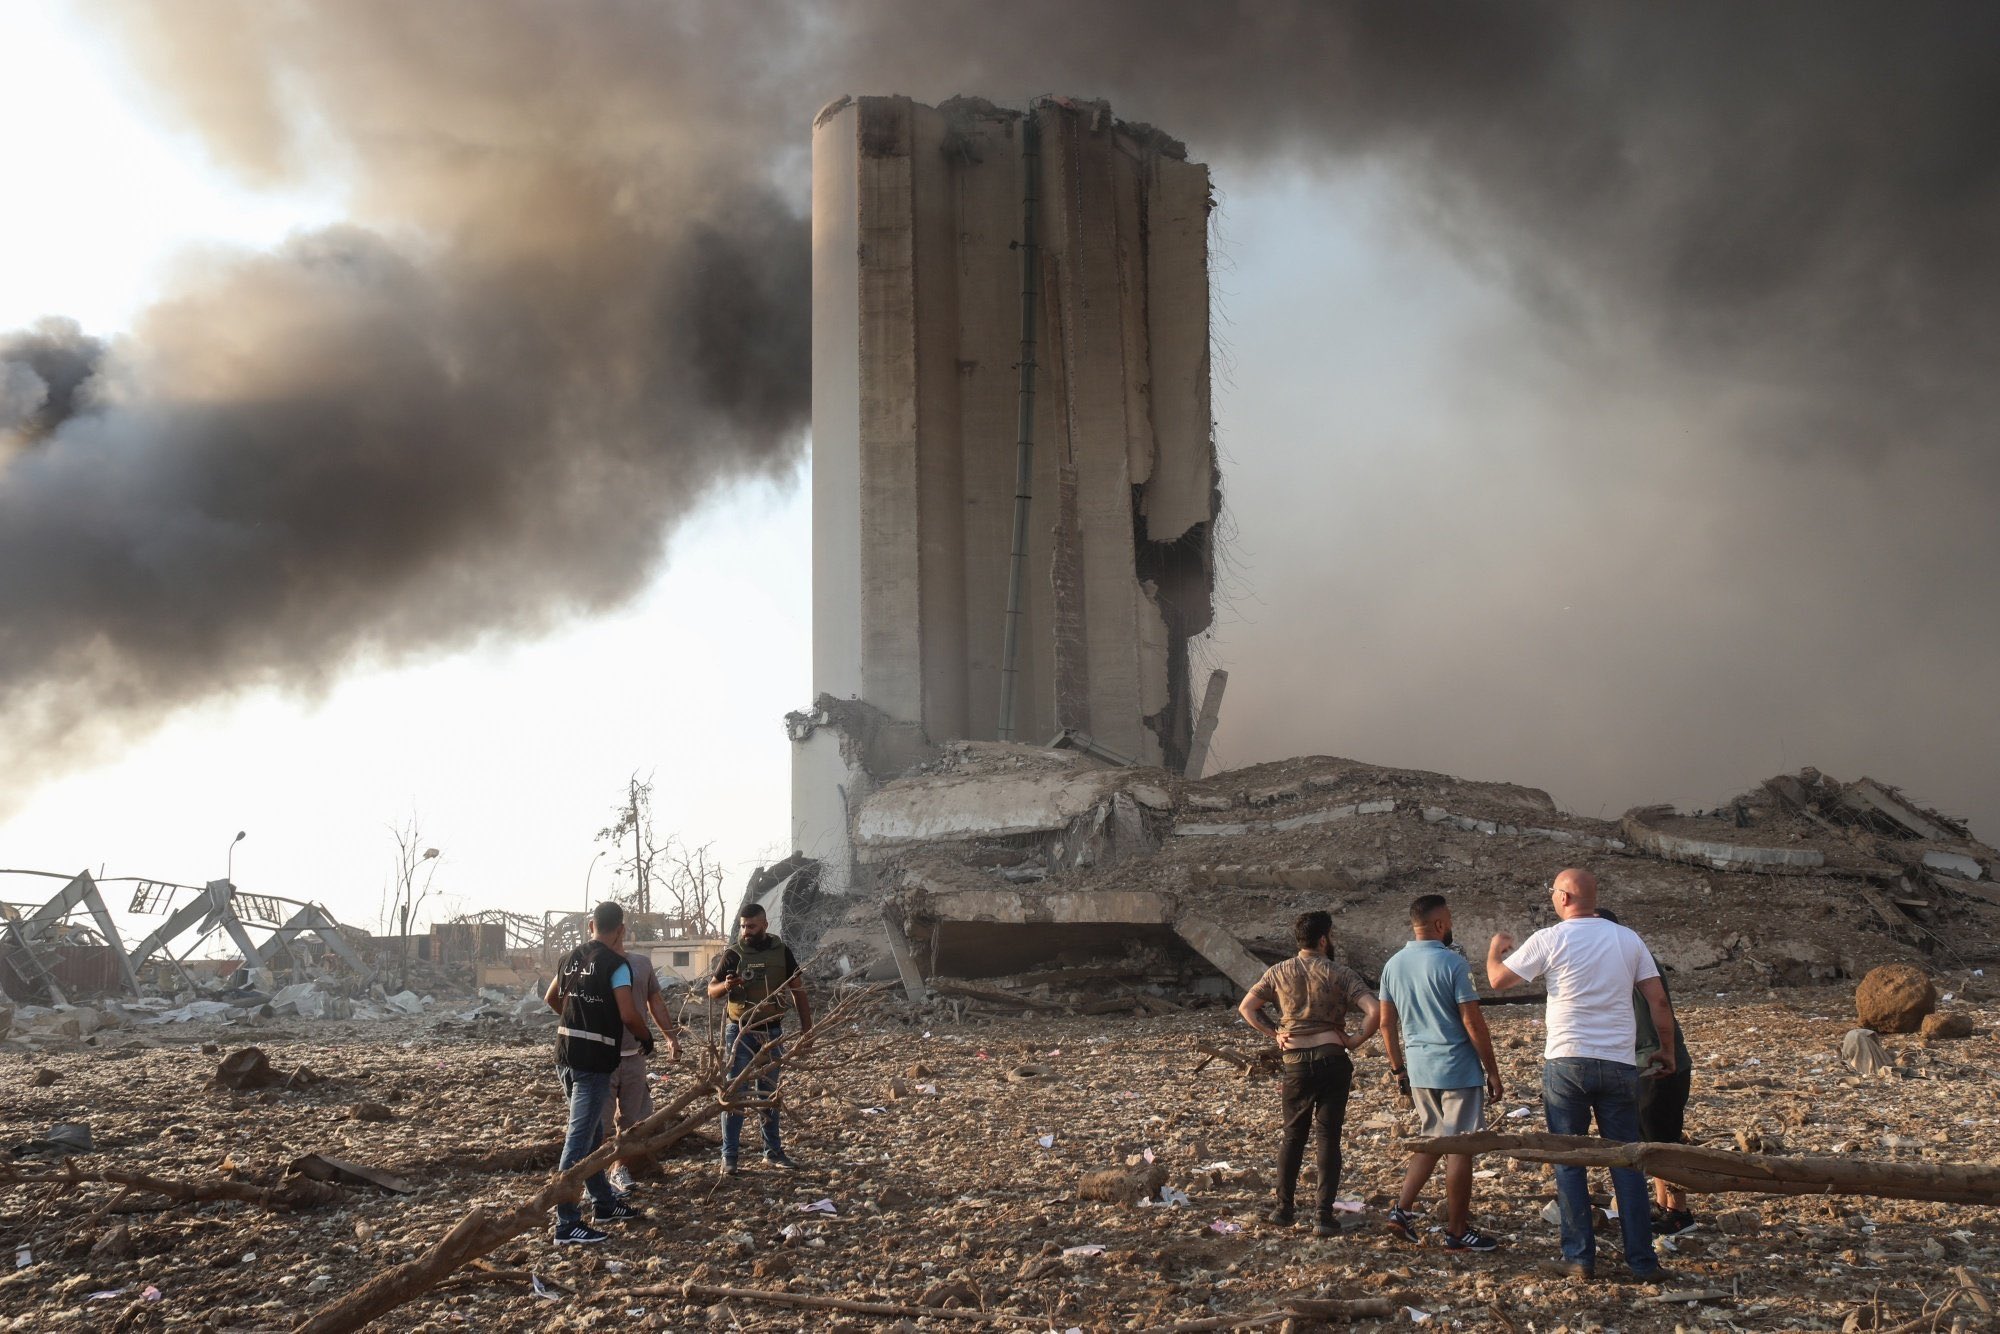 Здание разрушенное взрывом. Взрыв в Ливане порт Бейрут.